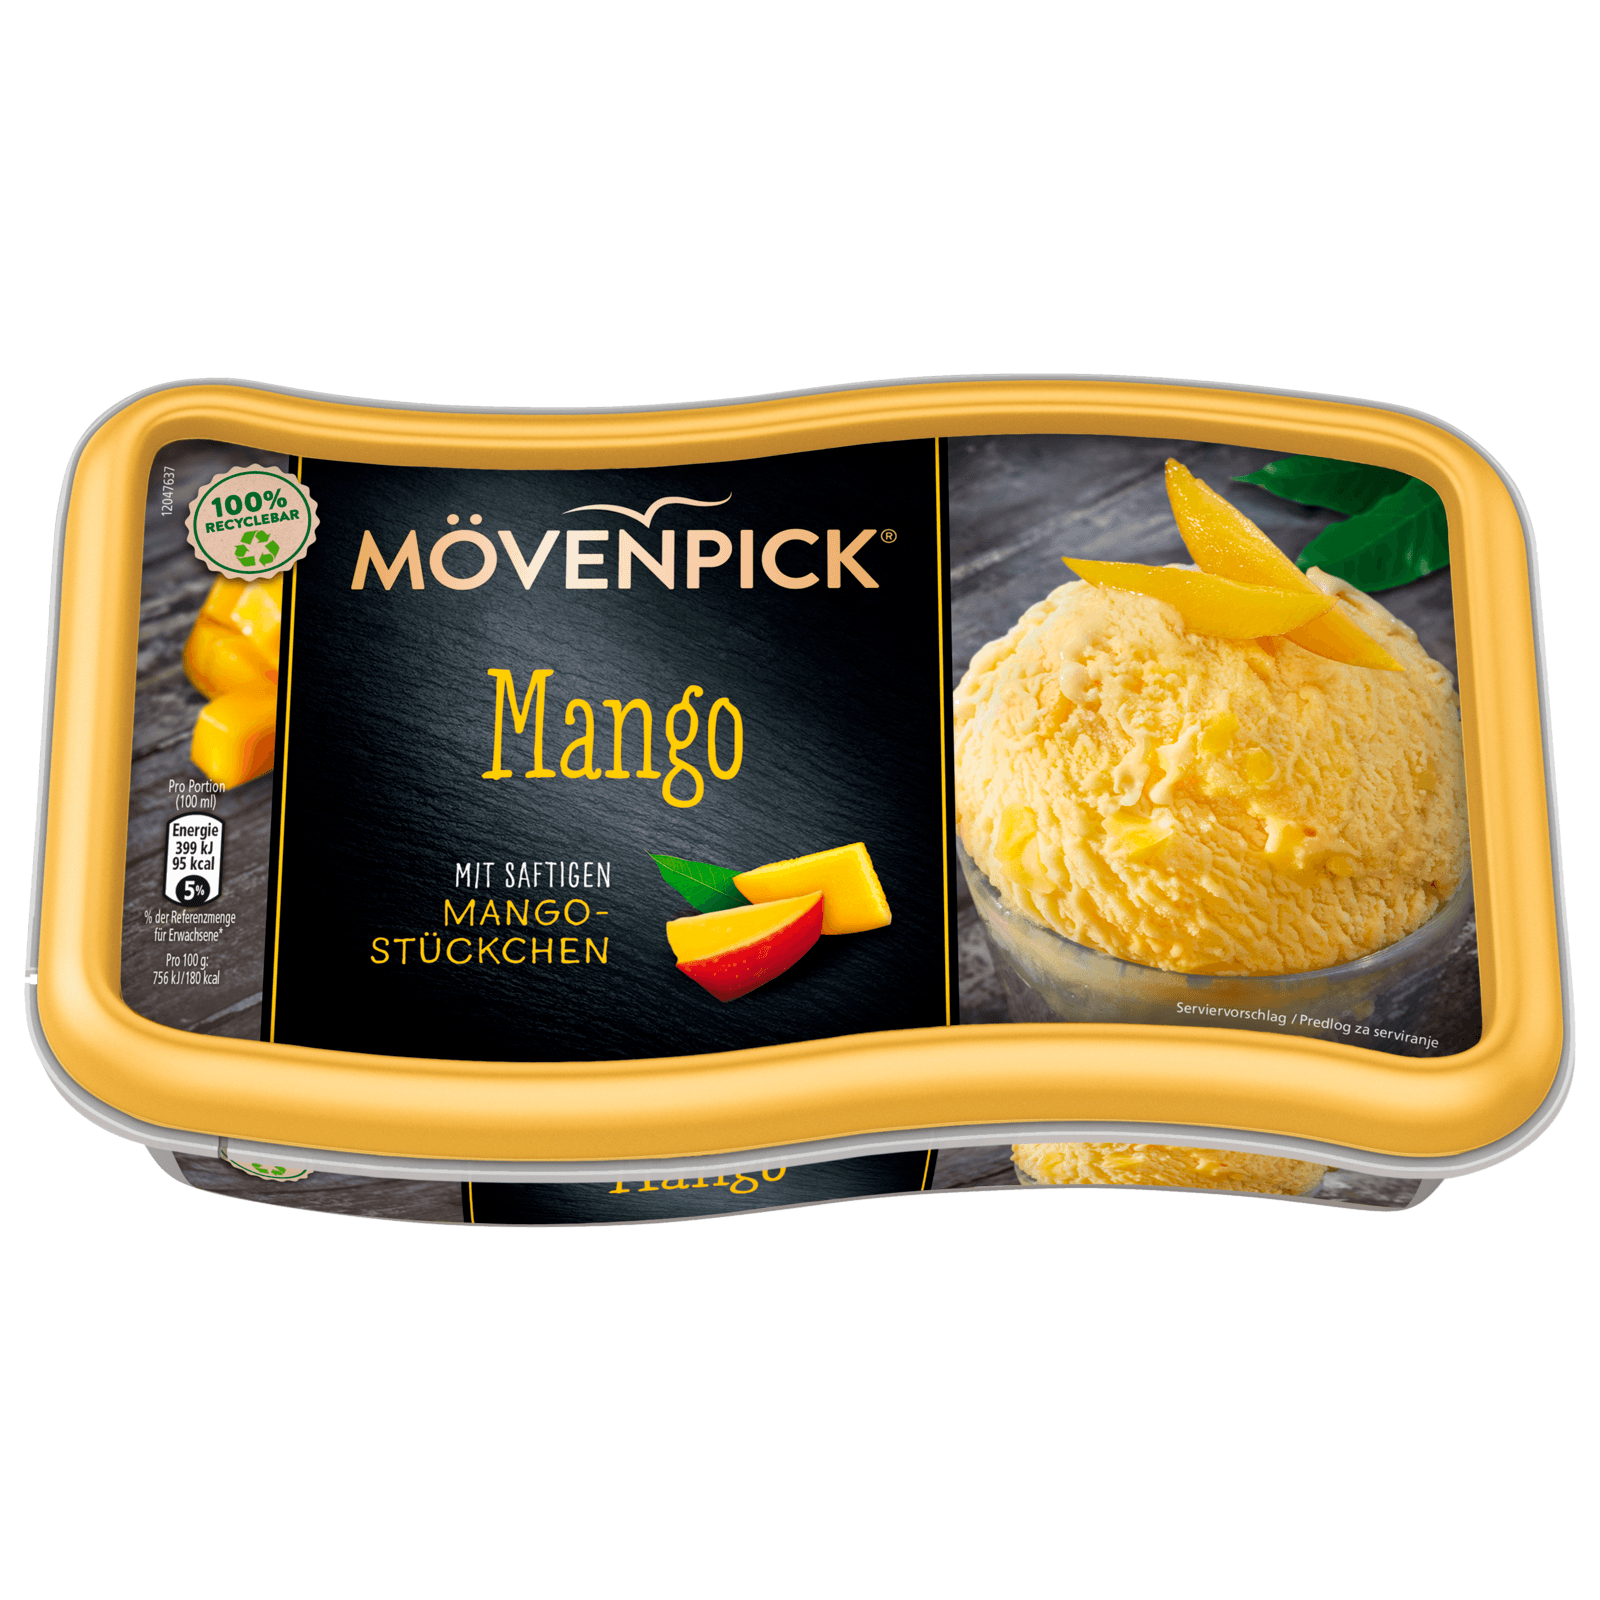 Mövenpick Eis Mango 850ml bei REWE online bestellen!